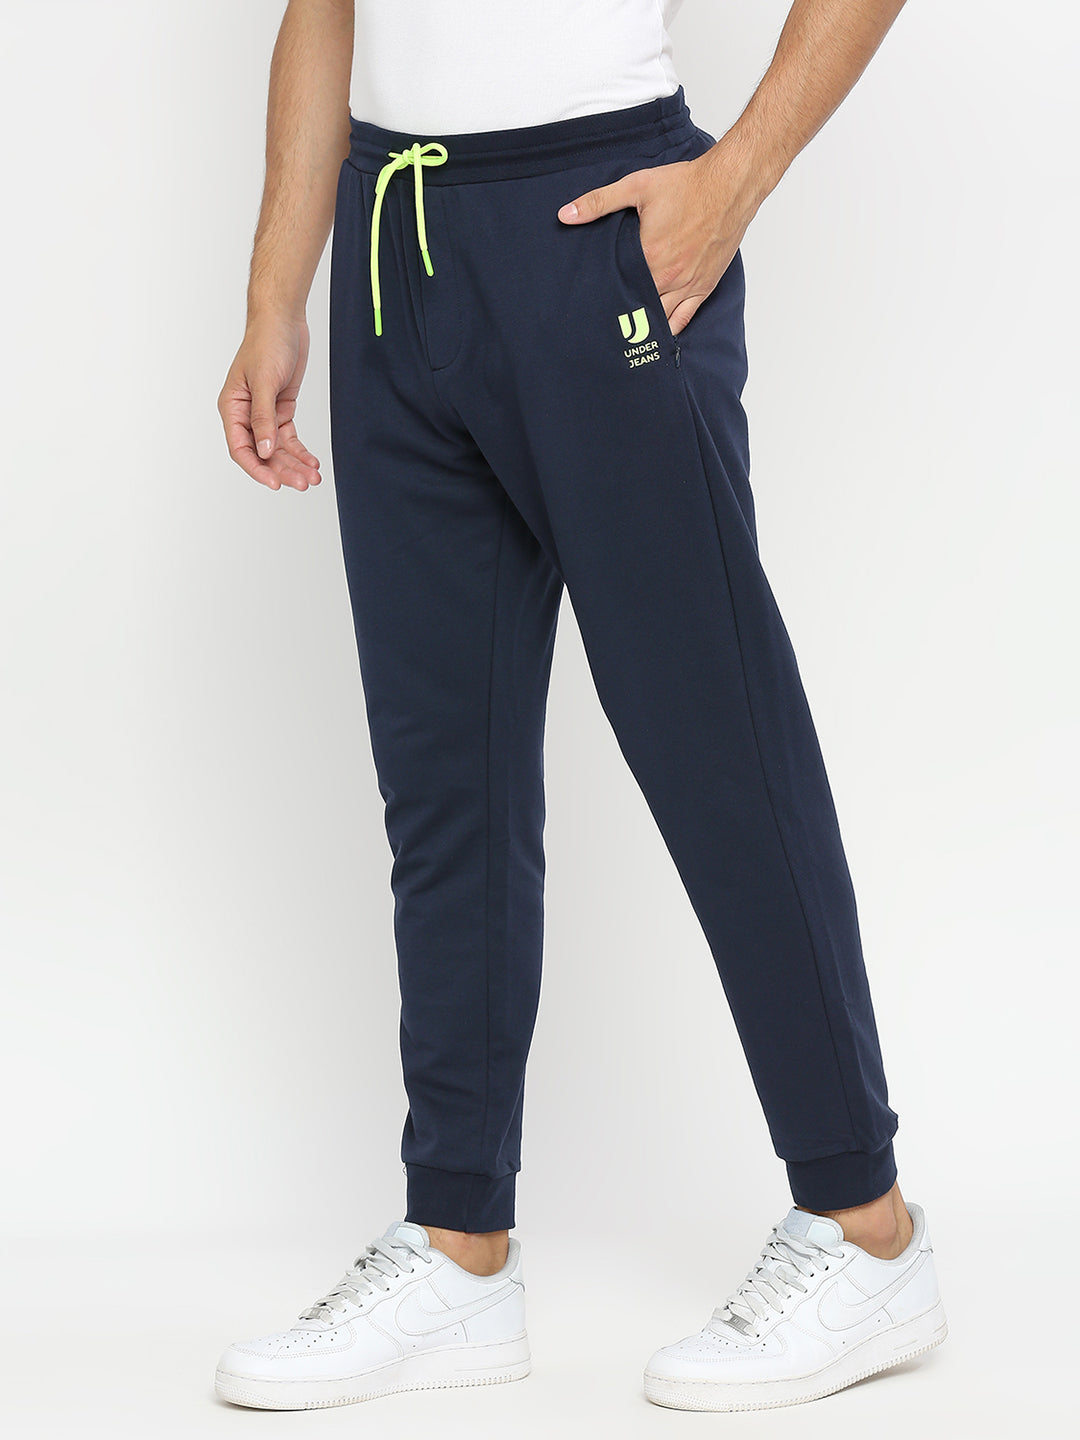 Men Premium Cotton Blend Navy Trackpants - UnderJeans by Spykar